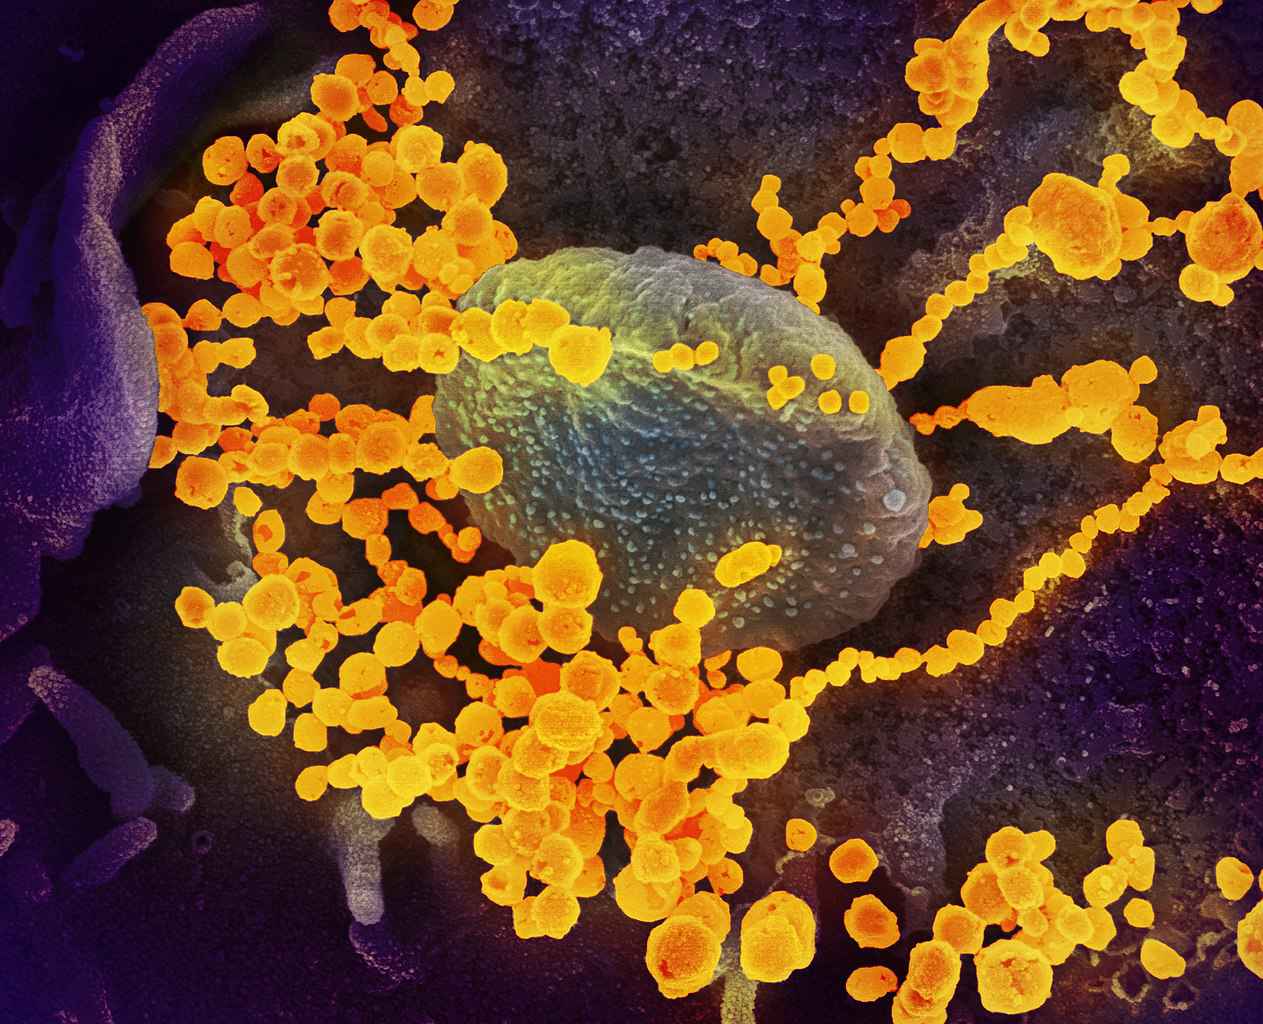 Partículas de coronavírus (amarelo) em torno de uma célula humana. Imagem foi obtida por microscópio eletrônico de varrimento com coloração digital